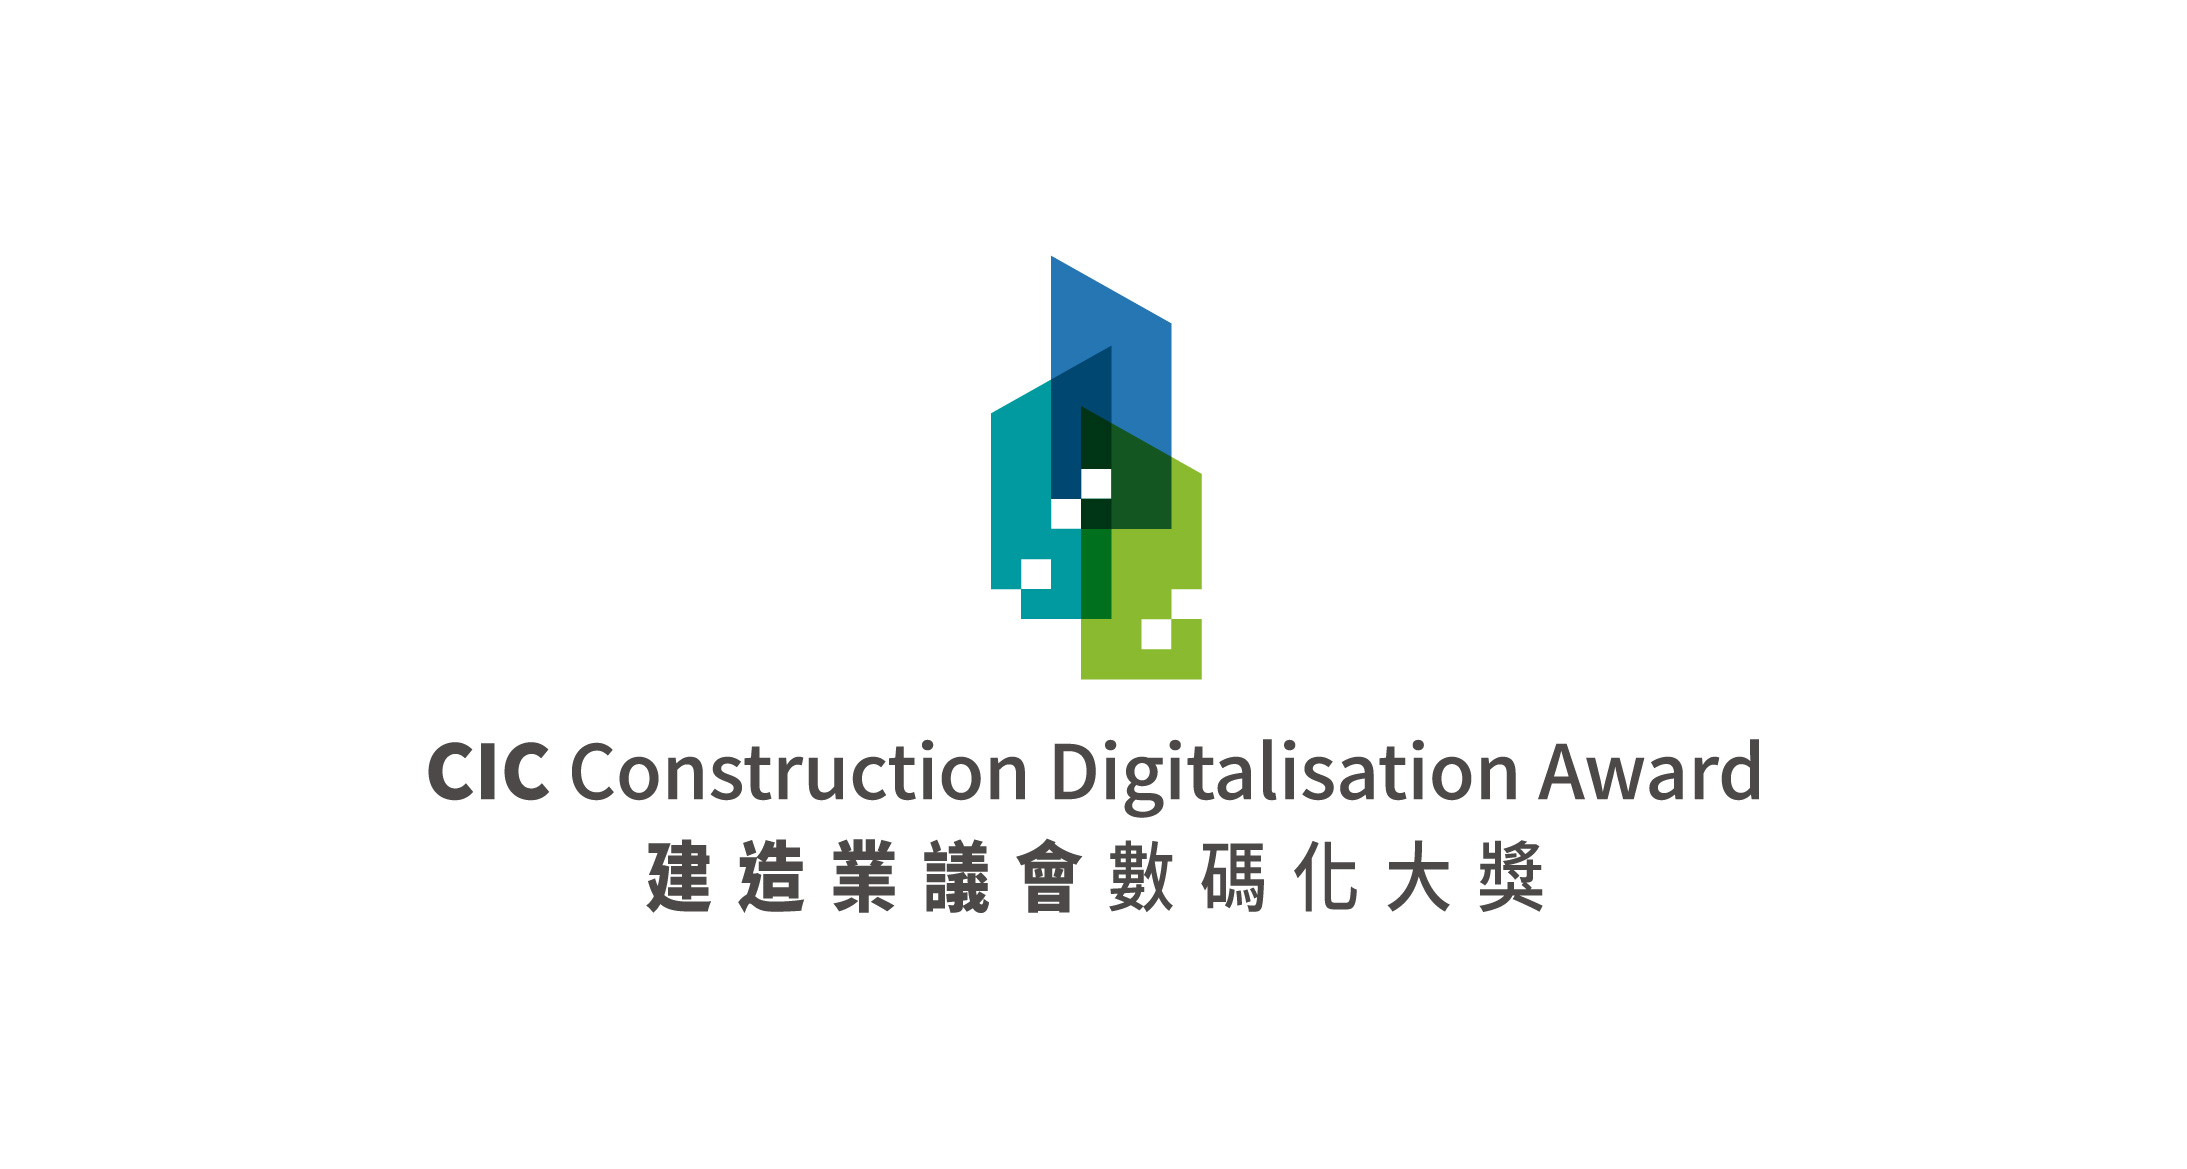 建造业议会数码化大奖